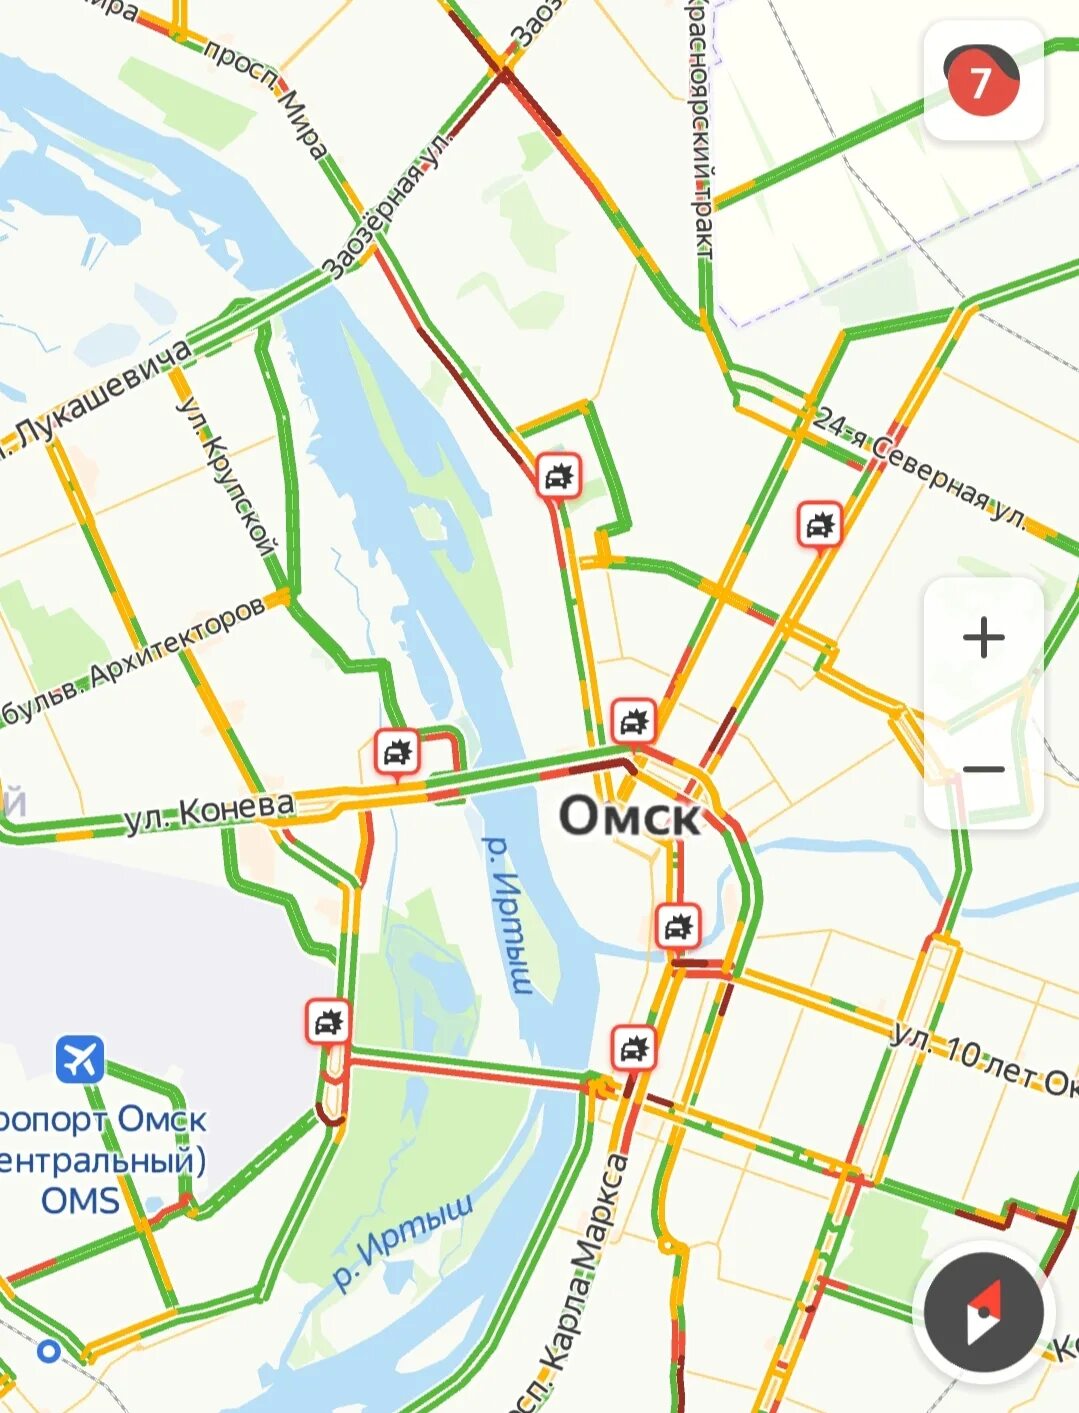 Г омск на карте. Омск на карте. Карта города Омска. Карта Омска с улицами.